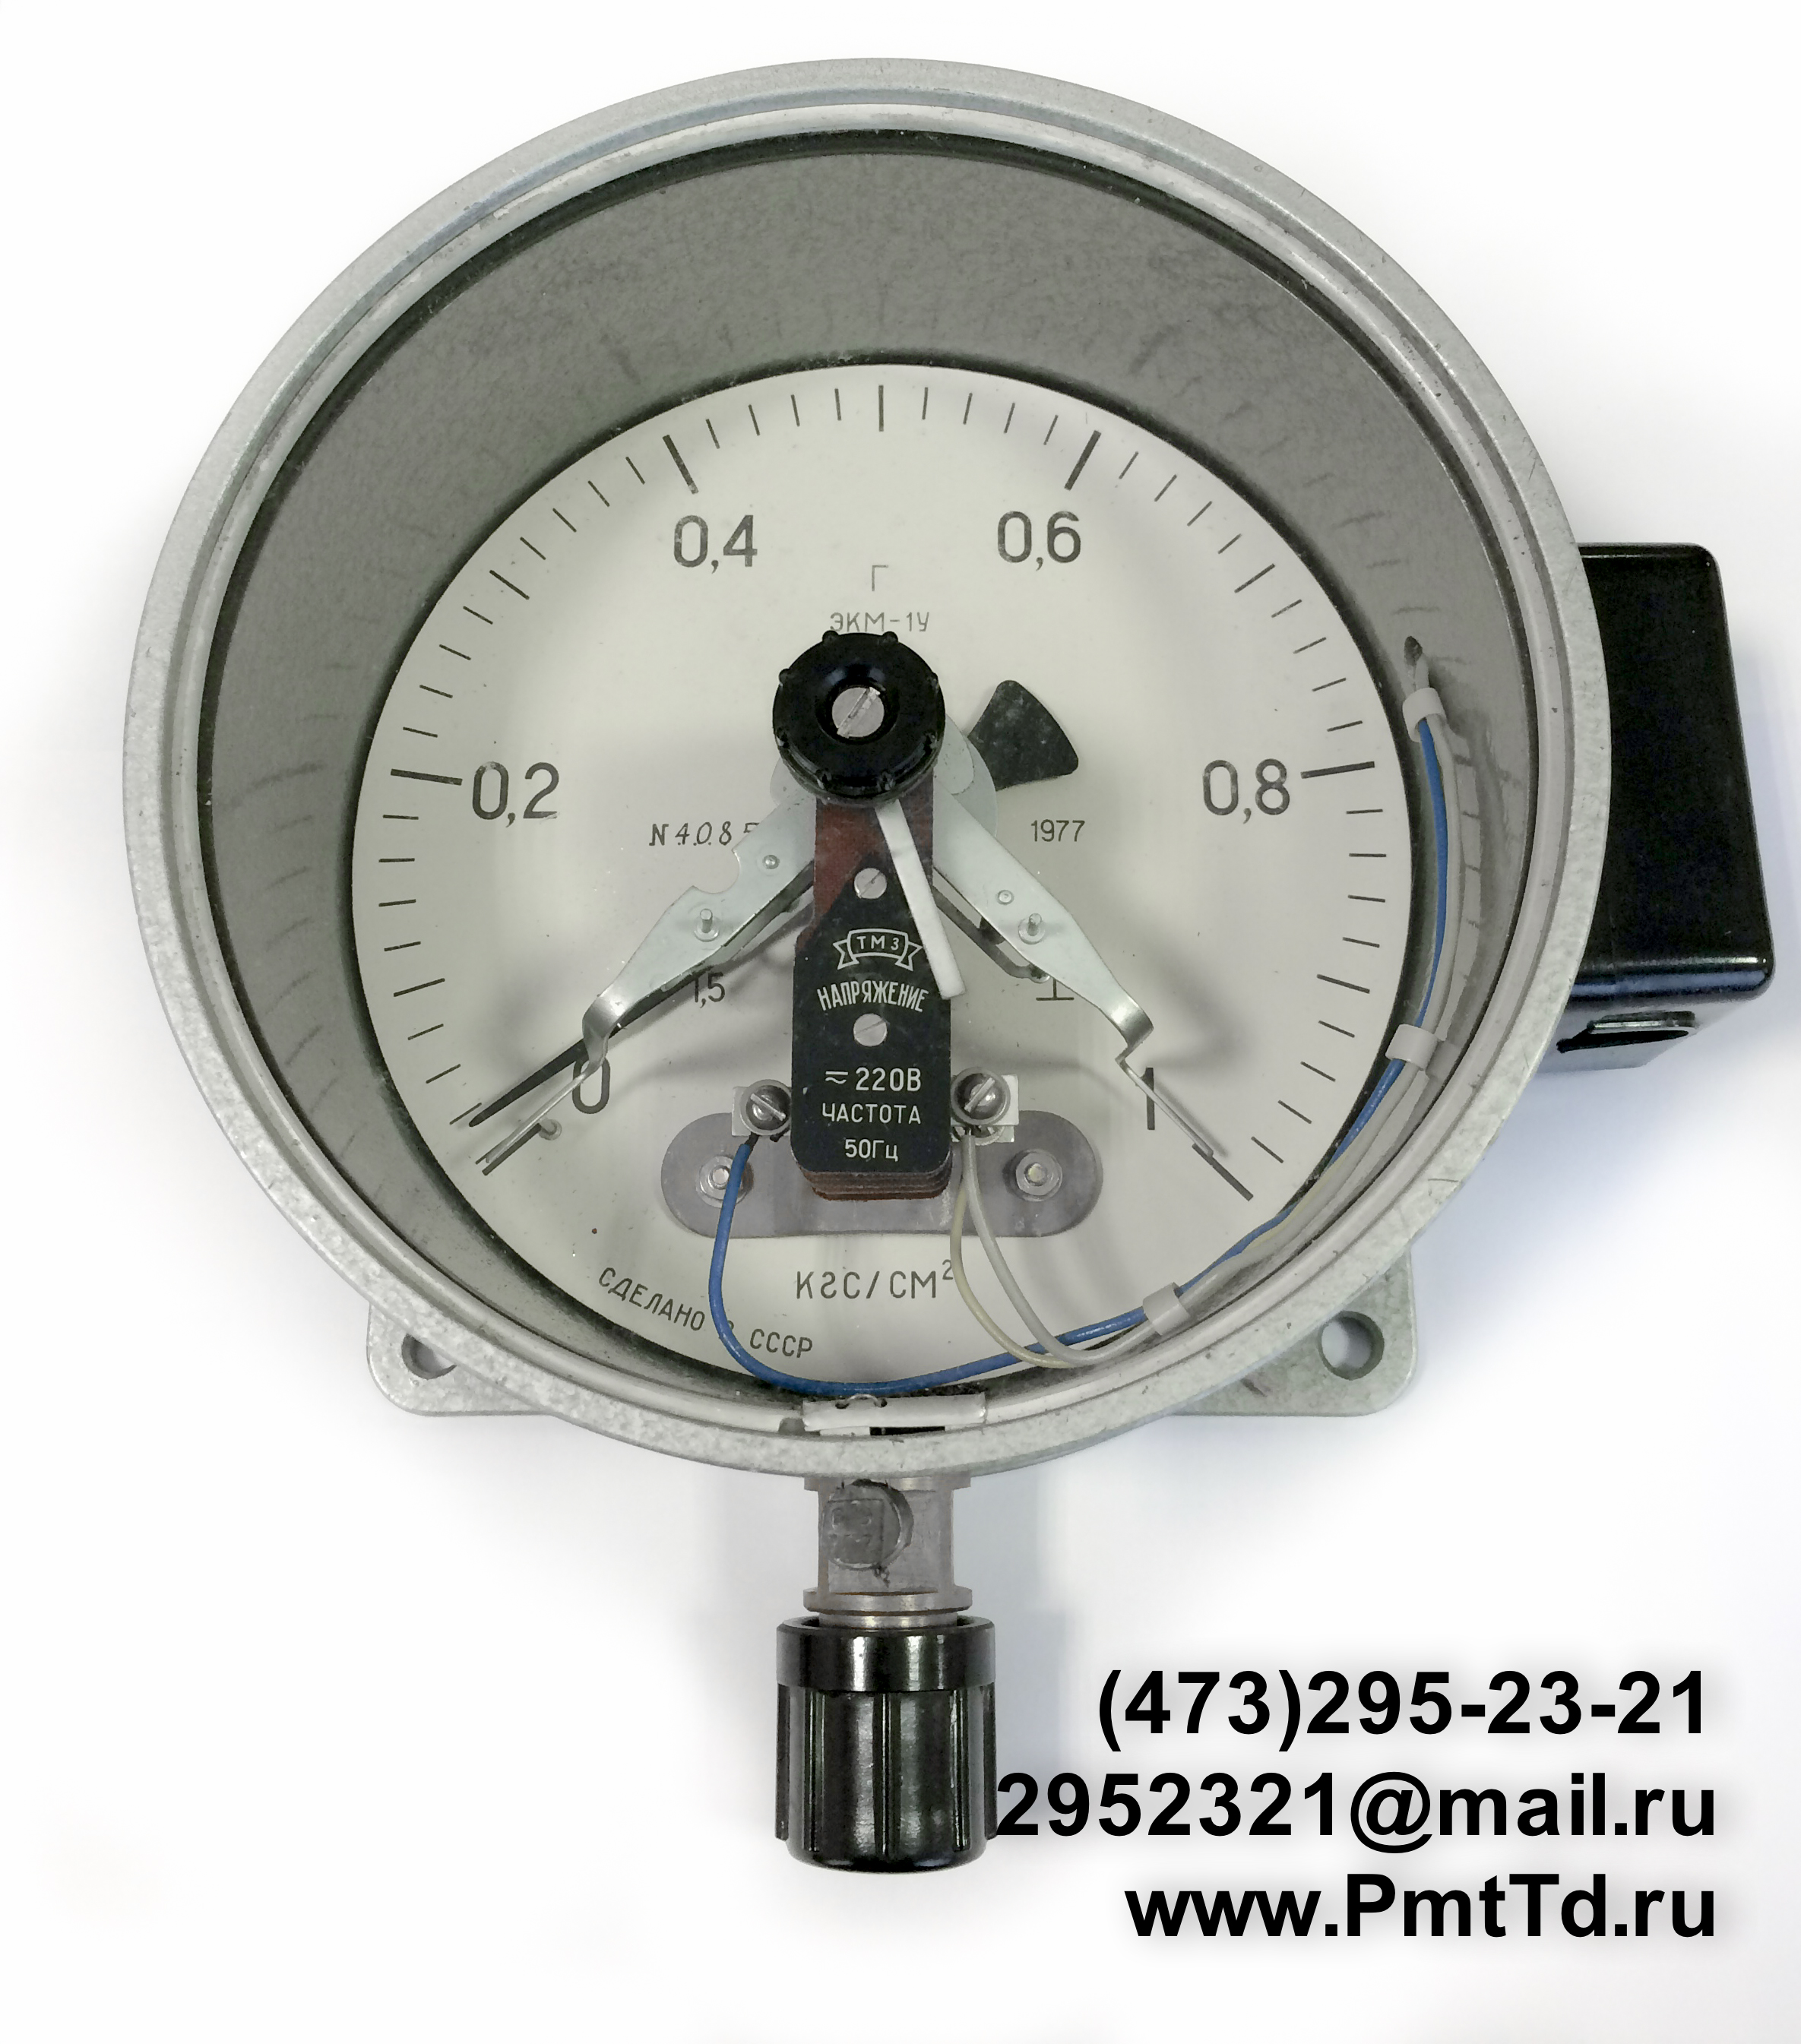 Электроконтактный манометр ЭКМ-1У 0-6 кгс/см2